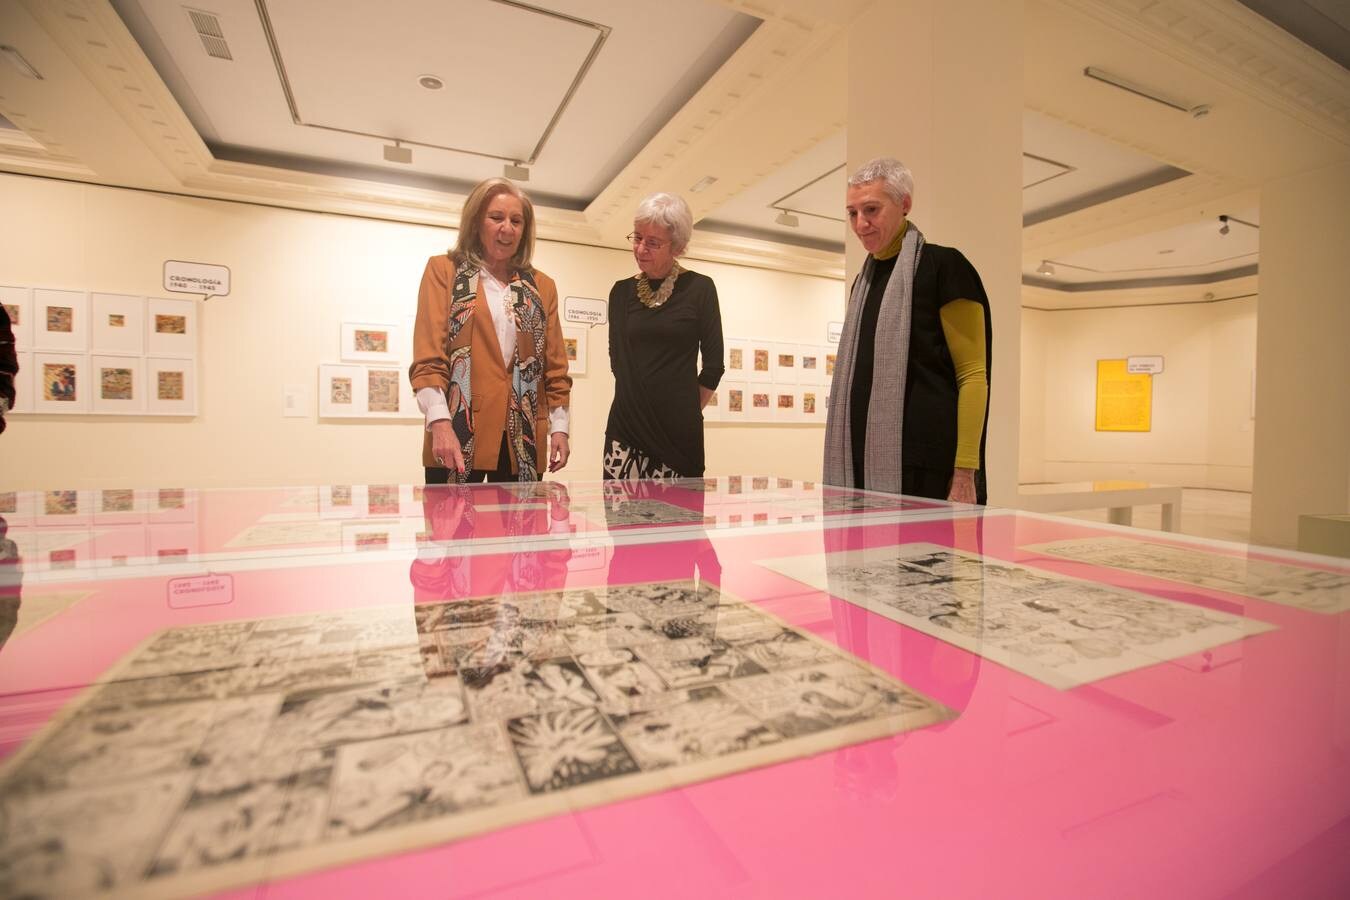 El Museo ABC y la Fundación CajaGranada proponen un recorrido por la historia del tebeo a través de una exposición con 250 piezas originales